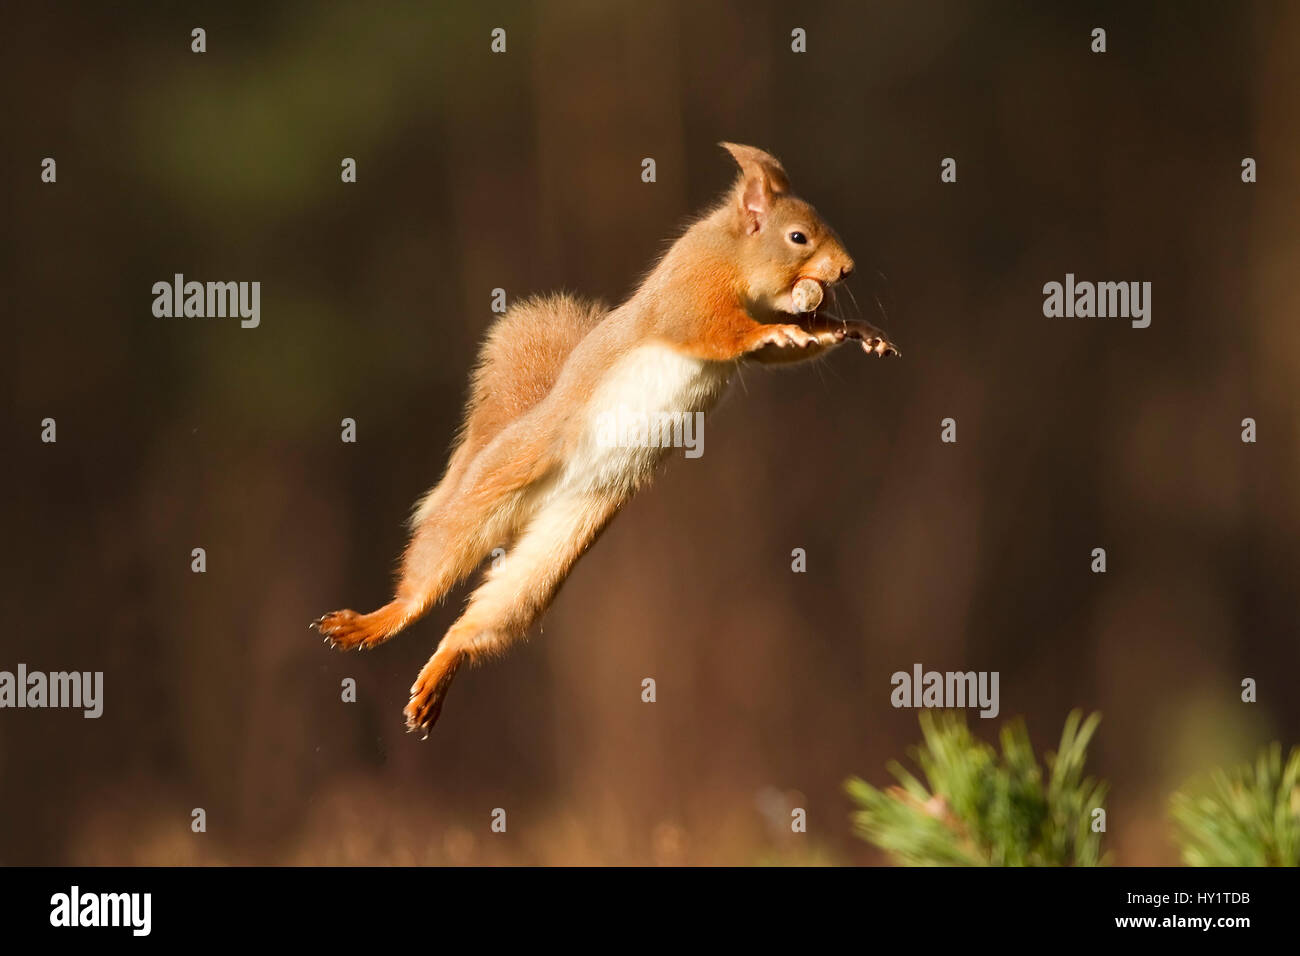 Red scoiattolo (Sciurus vulgaris) salta con il dado in bocca, Cairngorms National Park, Scozia, marzo 2012. Foto Stock